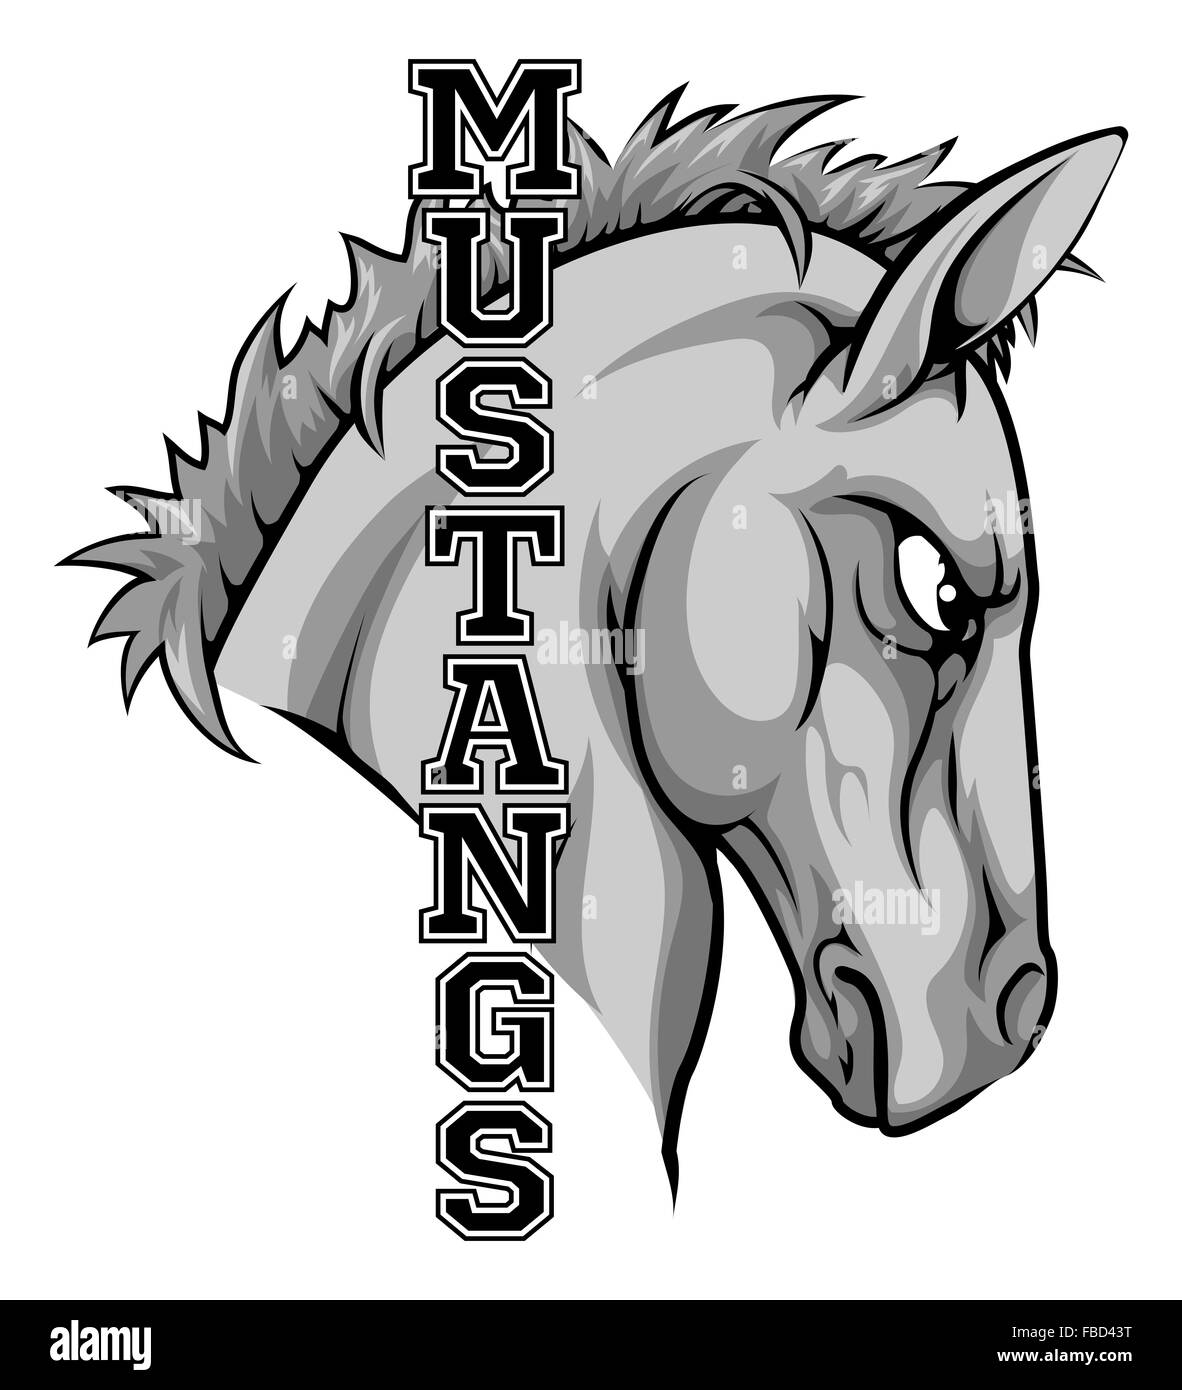 Une illustration d'un dessin animé sports cheval mascotte de l'équipe avec le texte des Mustang Banque D'Images